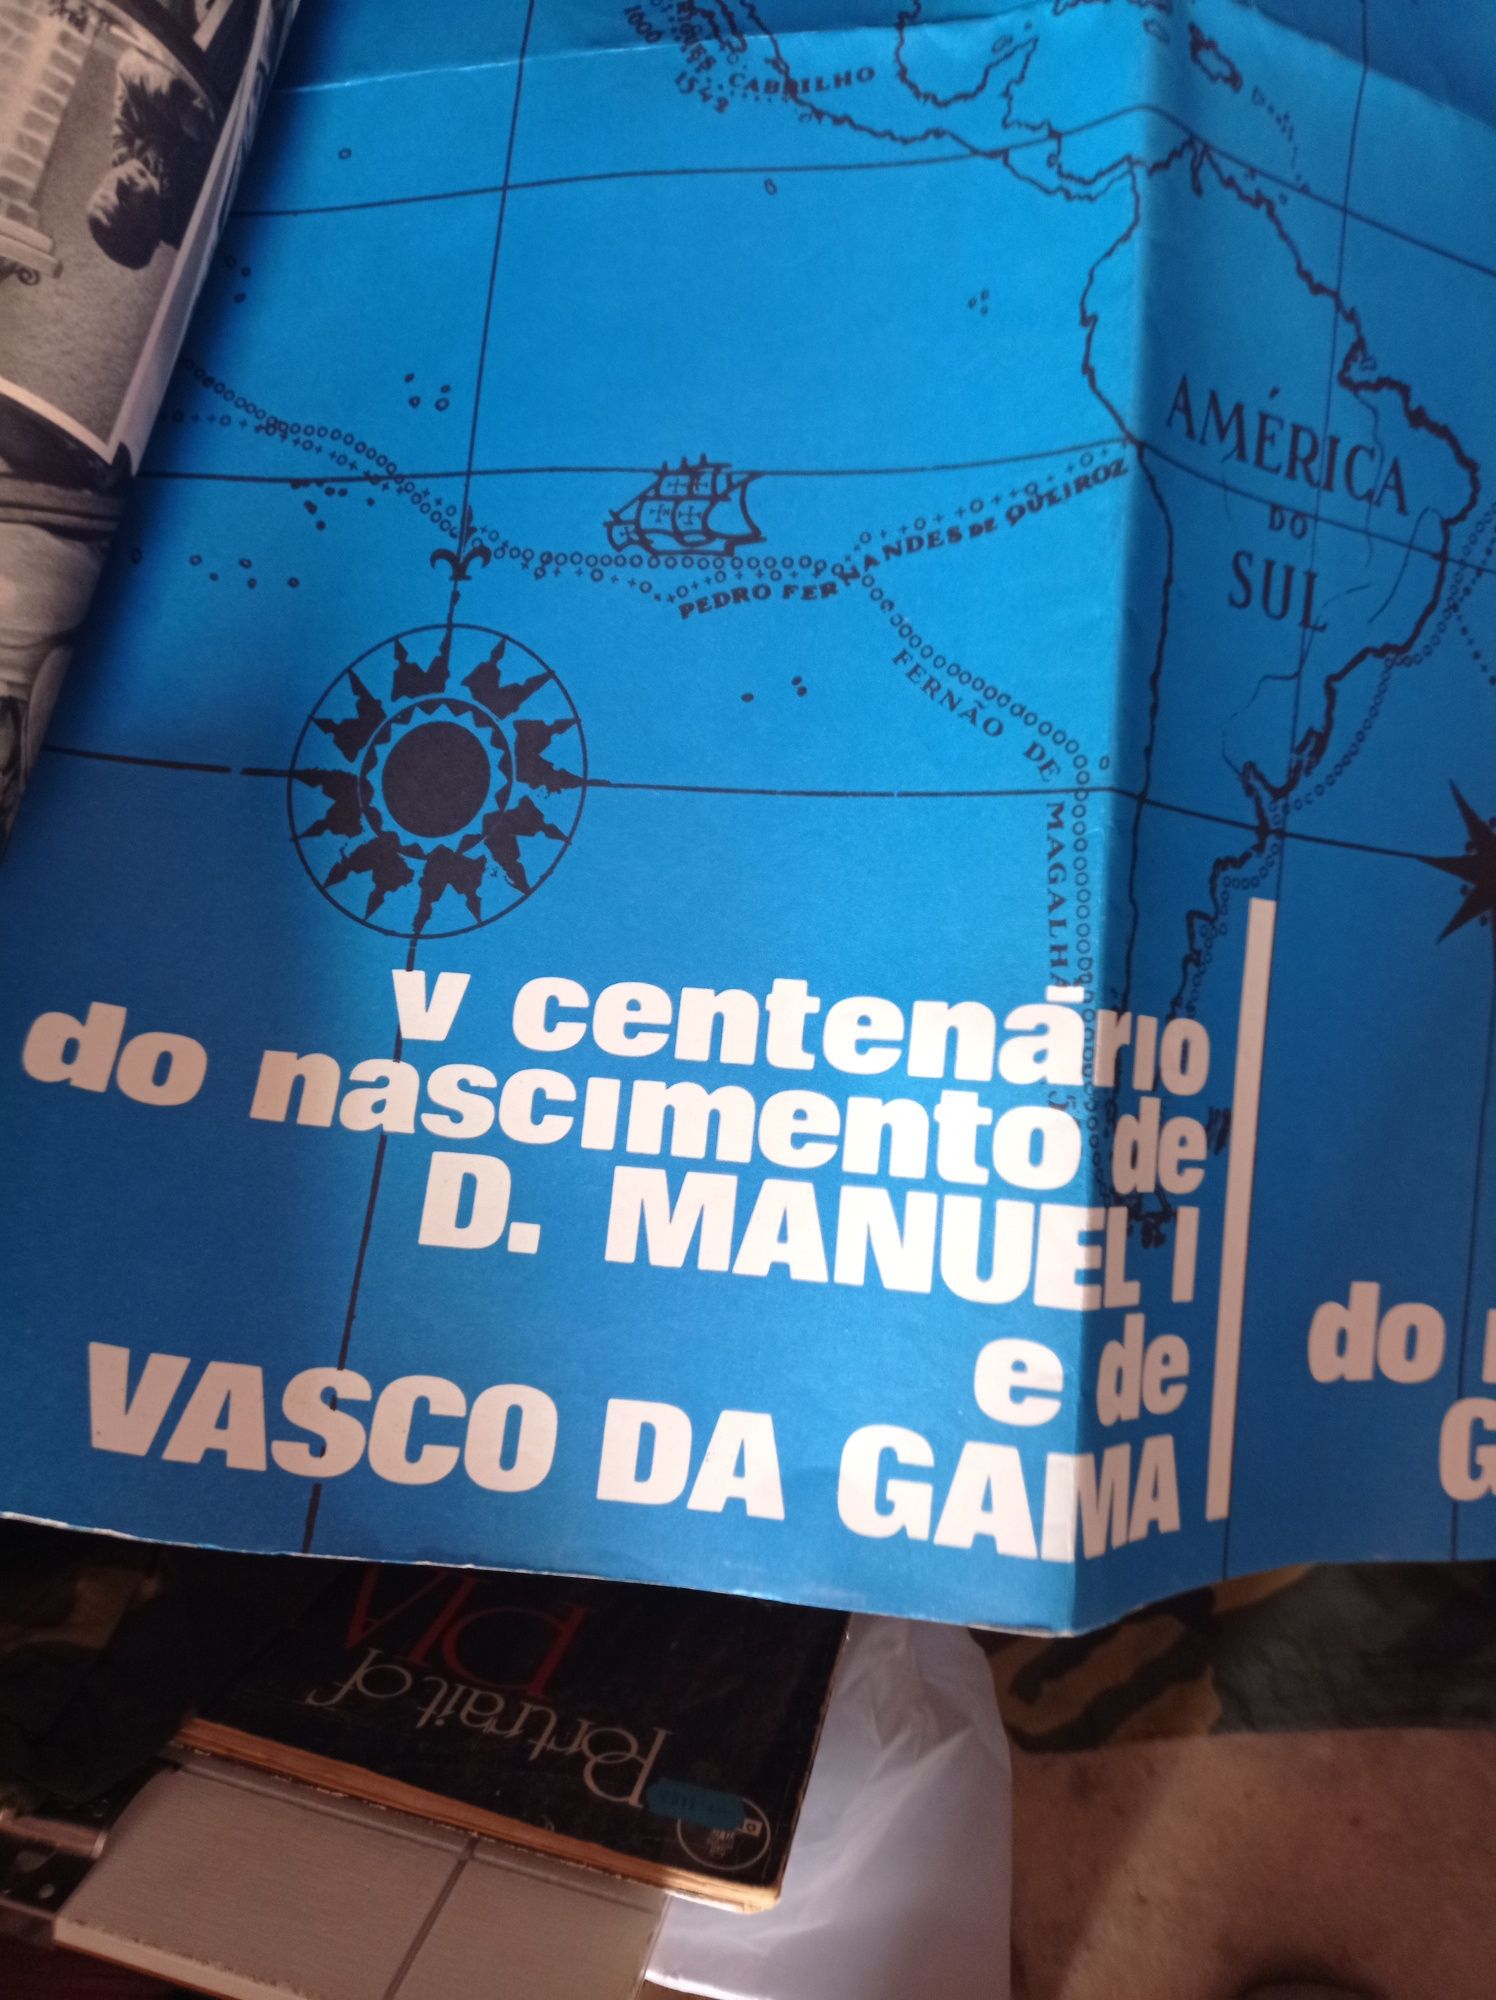 Poster raro da mocidade portuguesa em muito bom estado muito grande